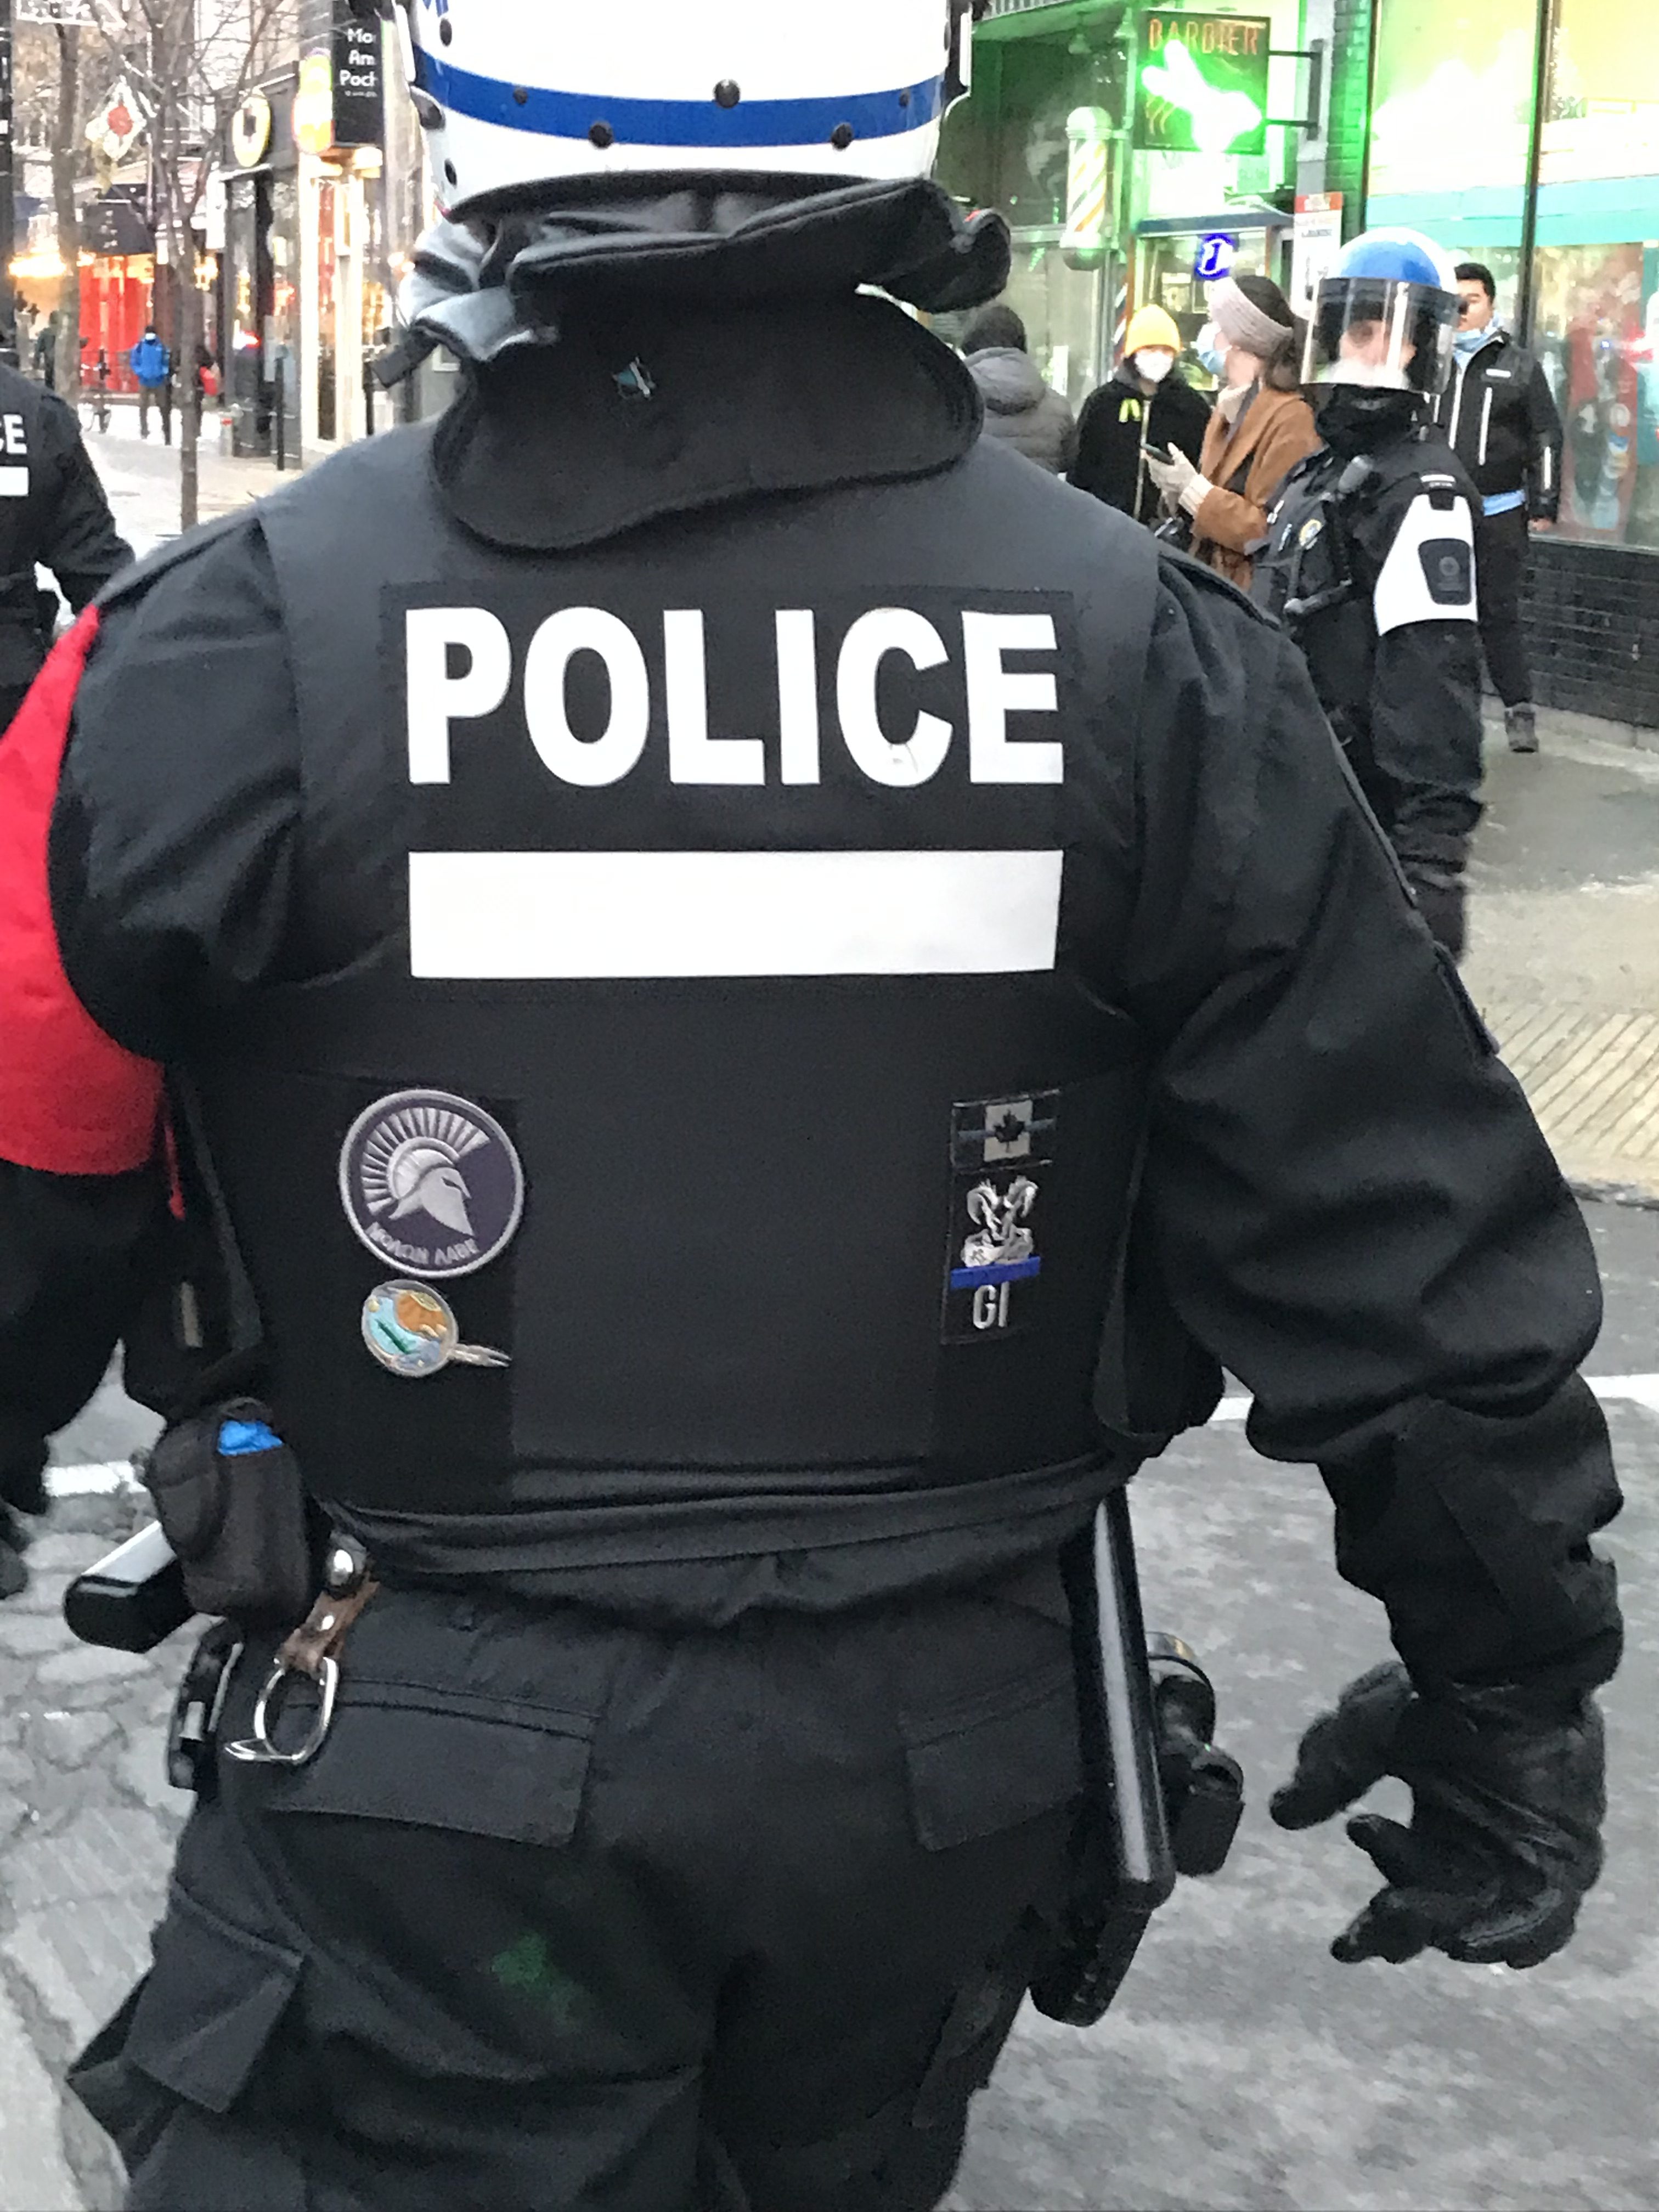 MONTREAL QUEBEC CANADA SPVM POLICE SWAT TEAM SHOULDER PATCH ALL BLACK